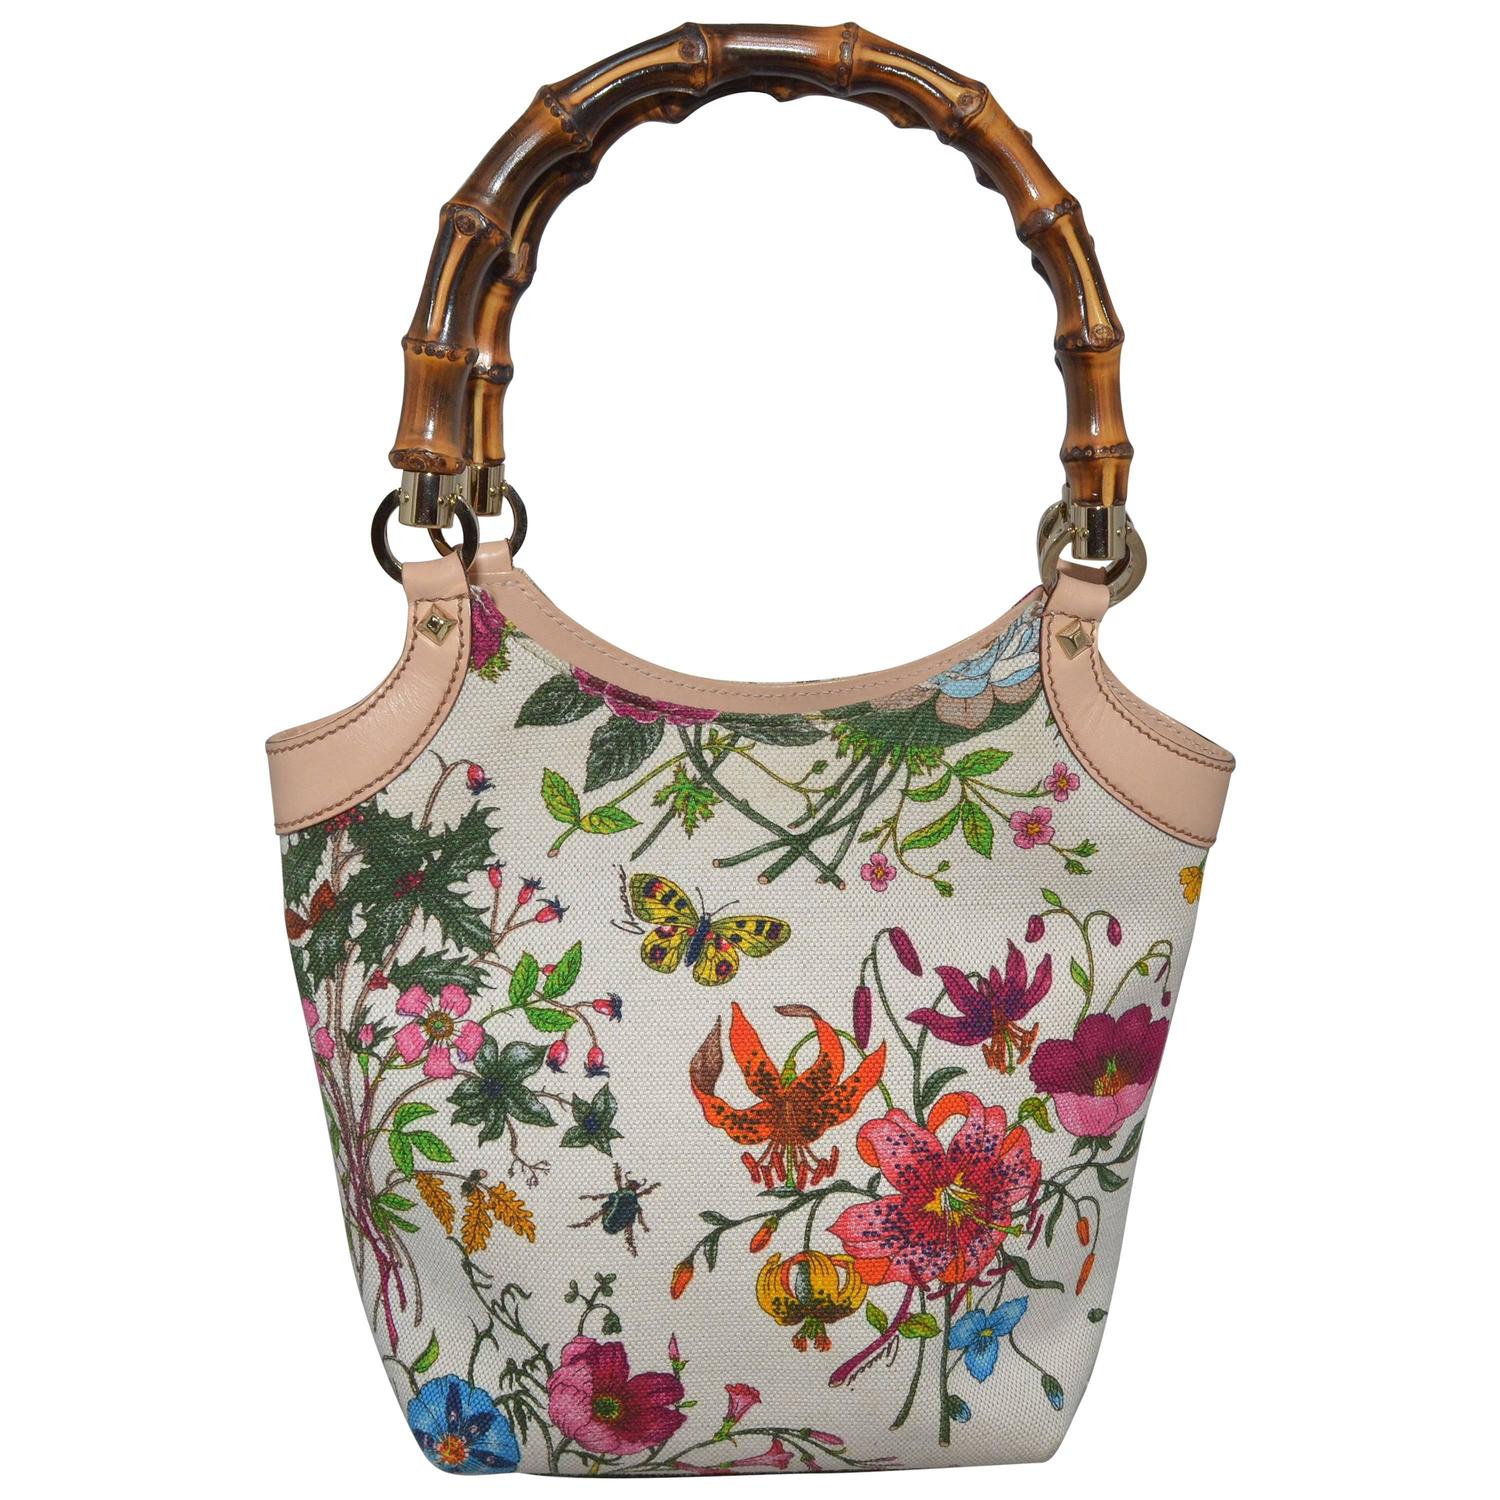 Gucci Blooms Floral and Insect Print Canvas Bamboo Handle Handbag at 1stdibs